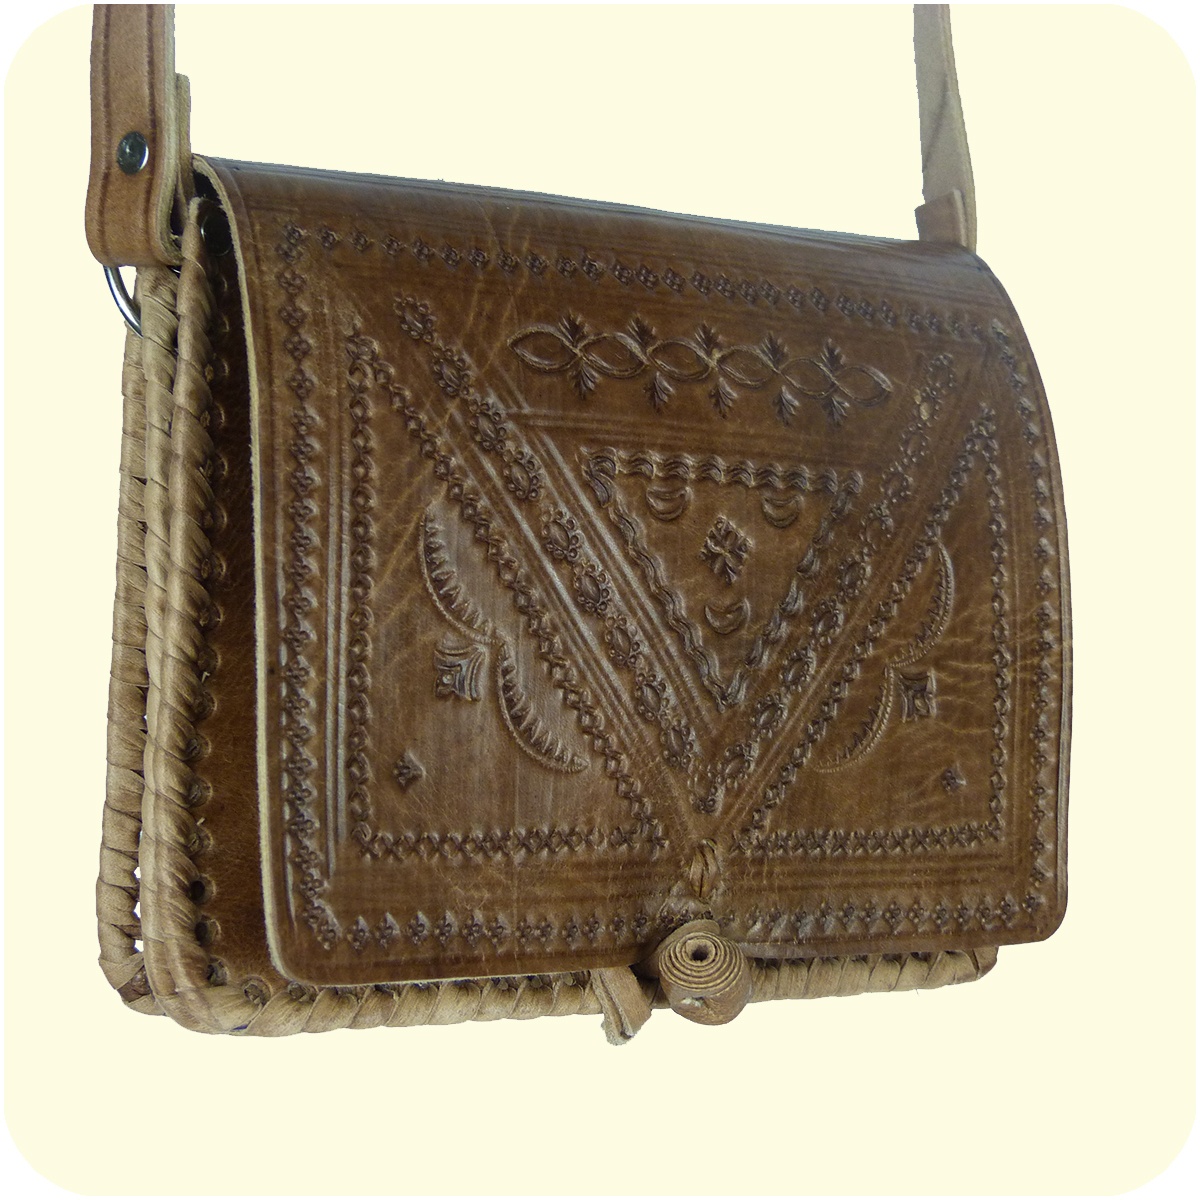 Leder Handtasche Casablanca 15x18cm  Umhängetasche mit dekorativer Lederprägung  marokkanisch